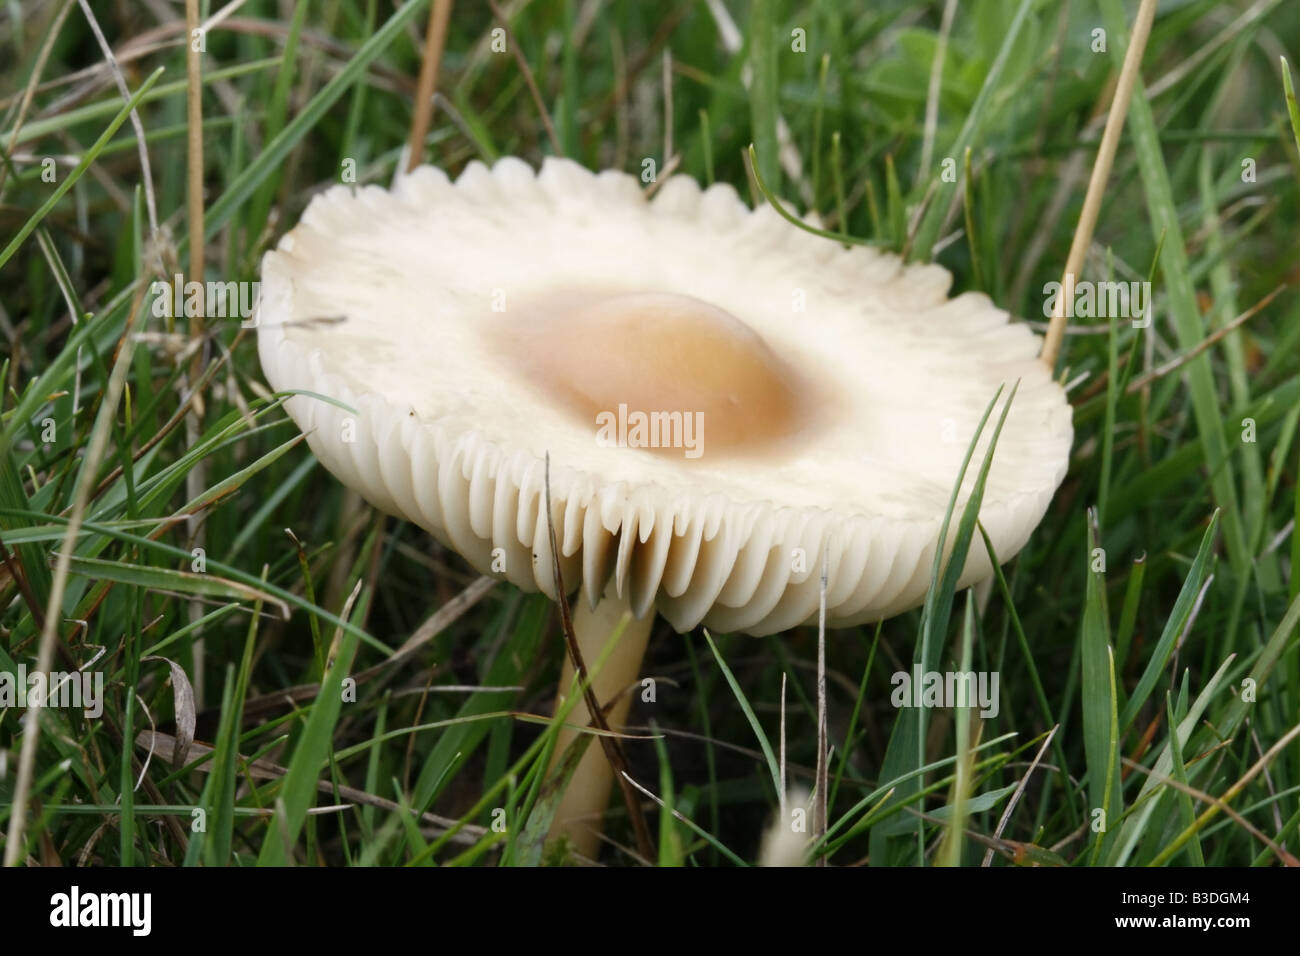 Fairy ring champignon, marasmius oreades. Stock Photo